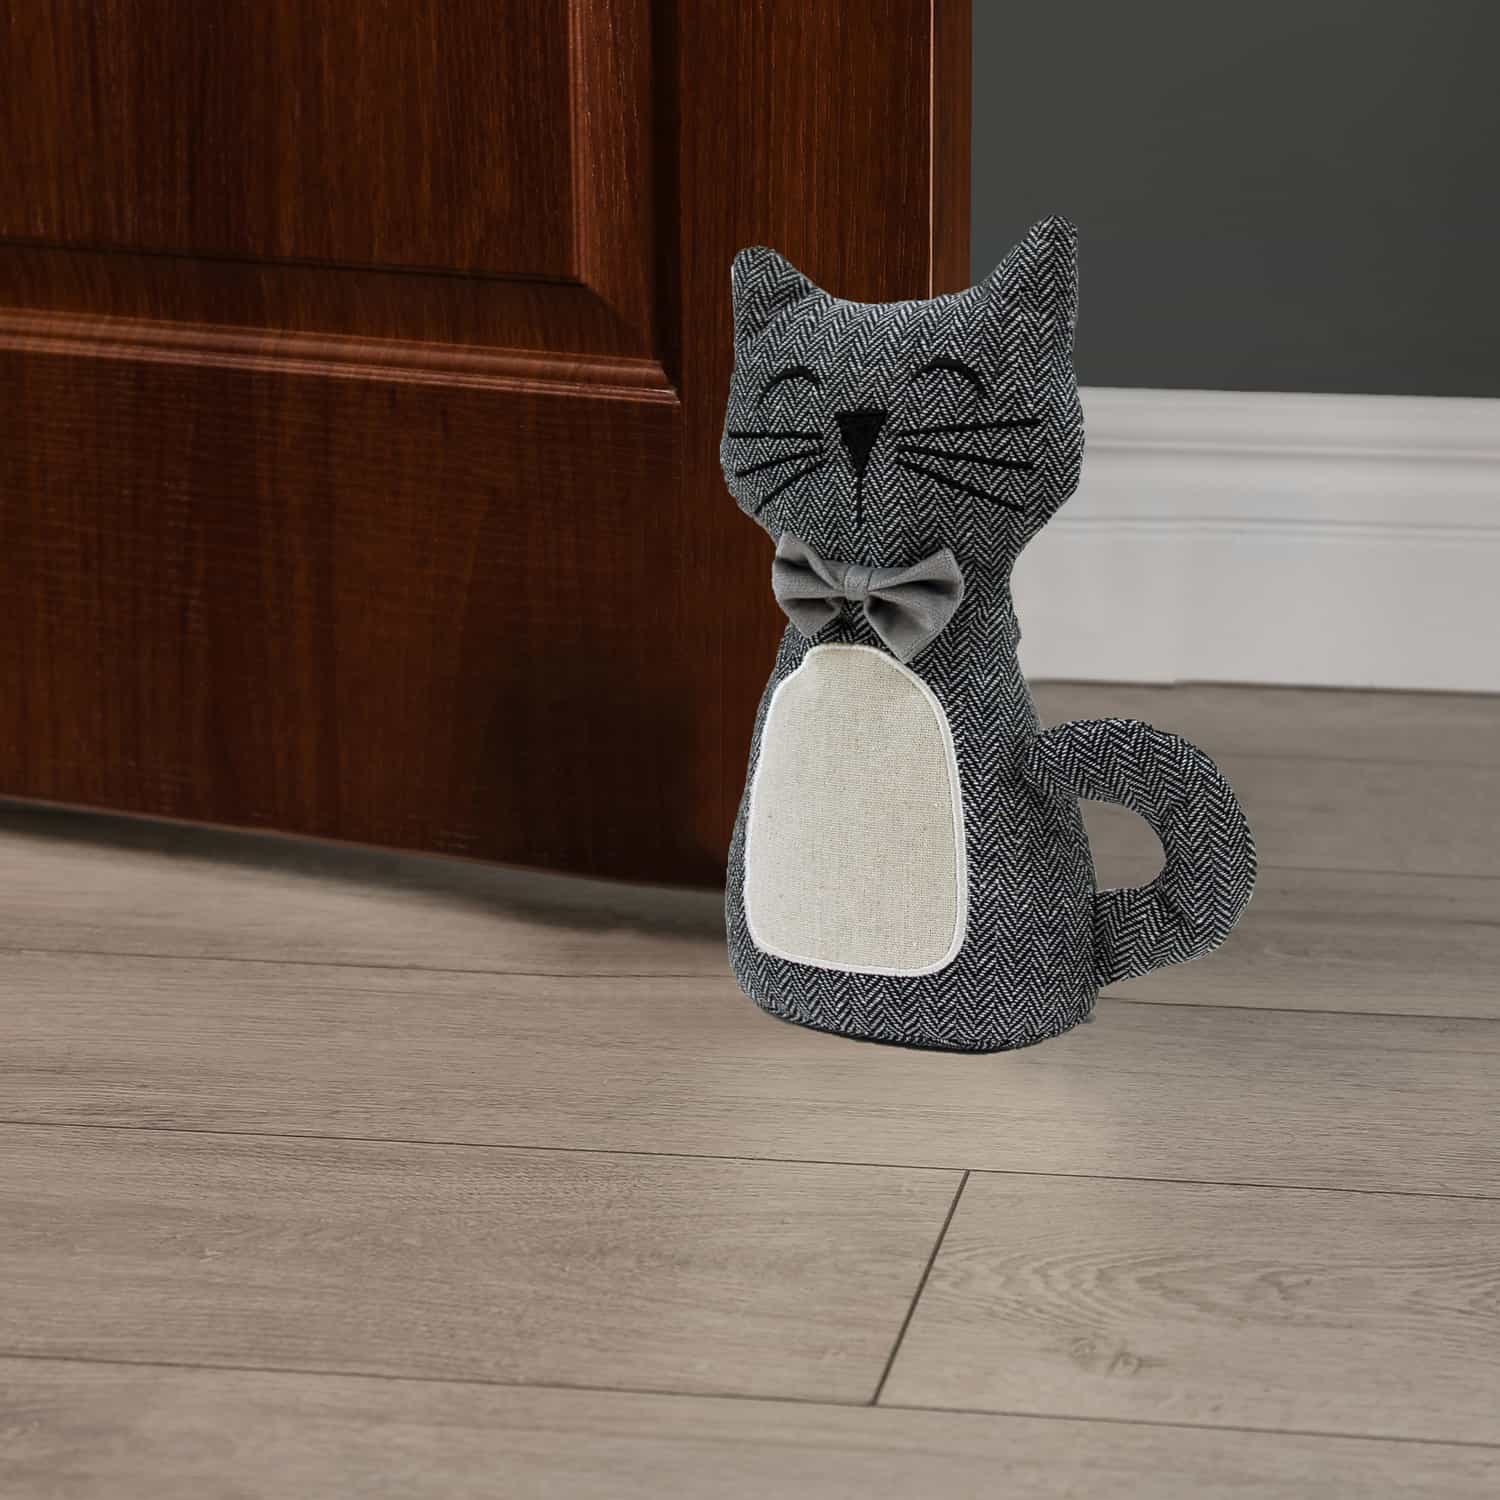 Checker Cat Fabric Bag Door Stop Interior Weighted Floor 2.2 lbs